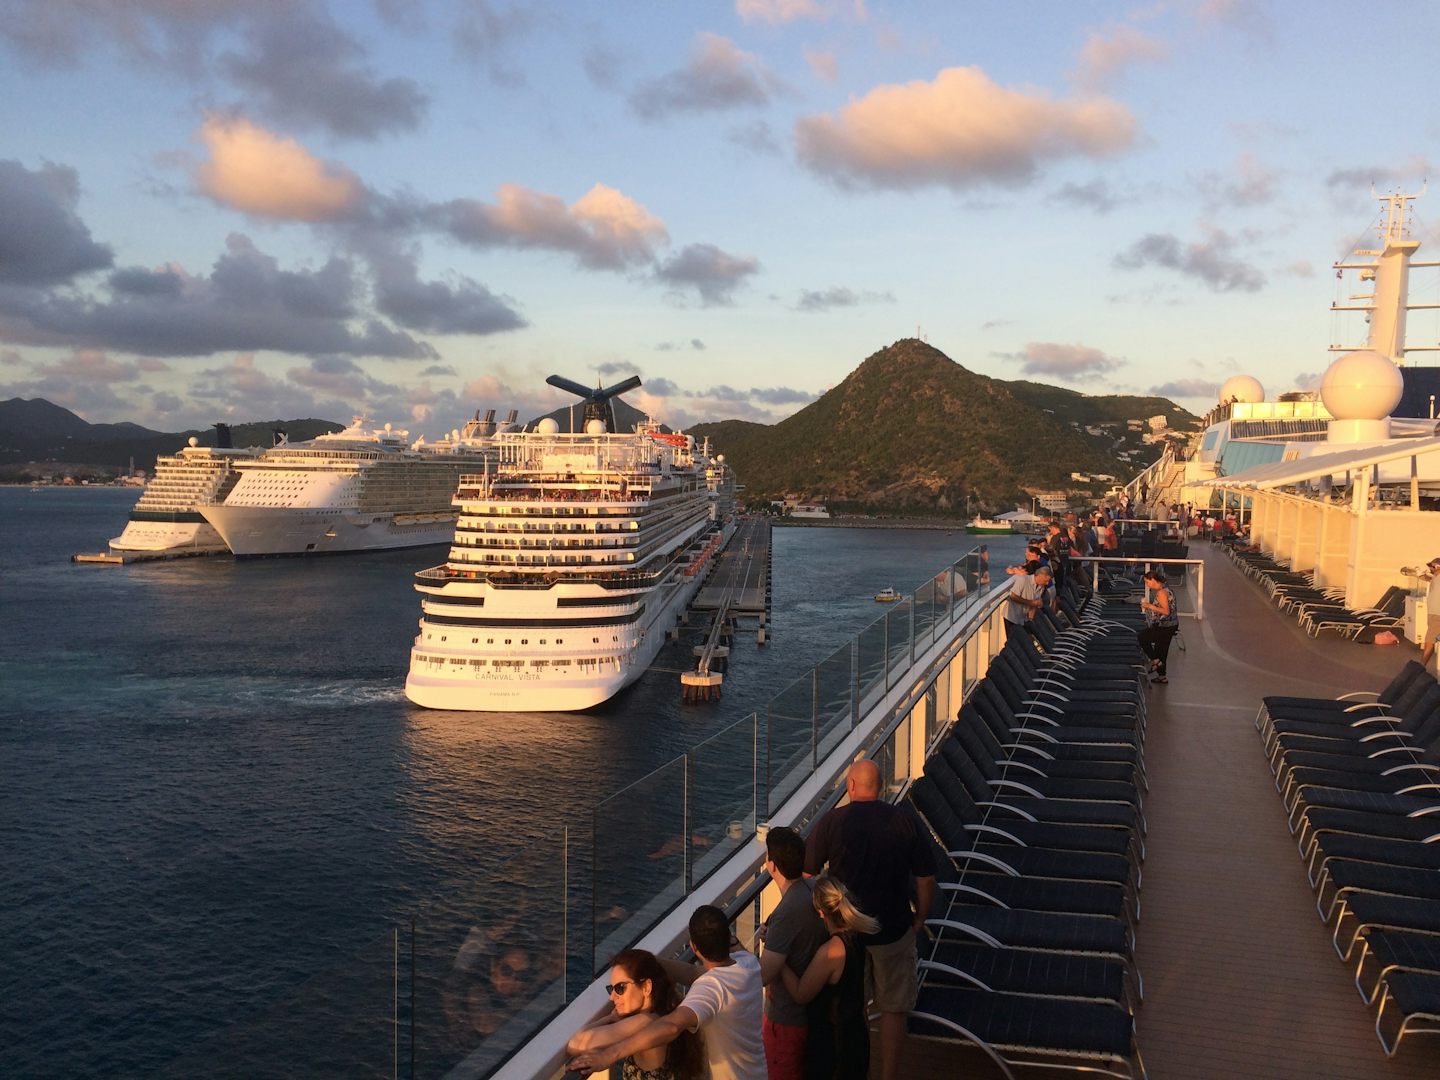 Many great ships in port St. Maarten